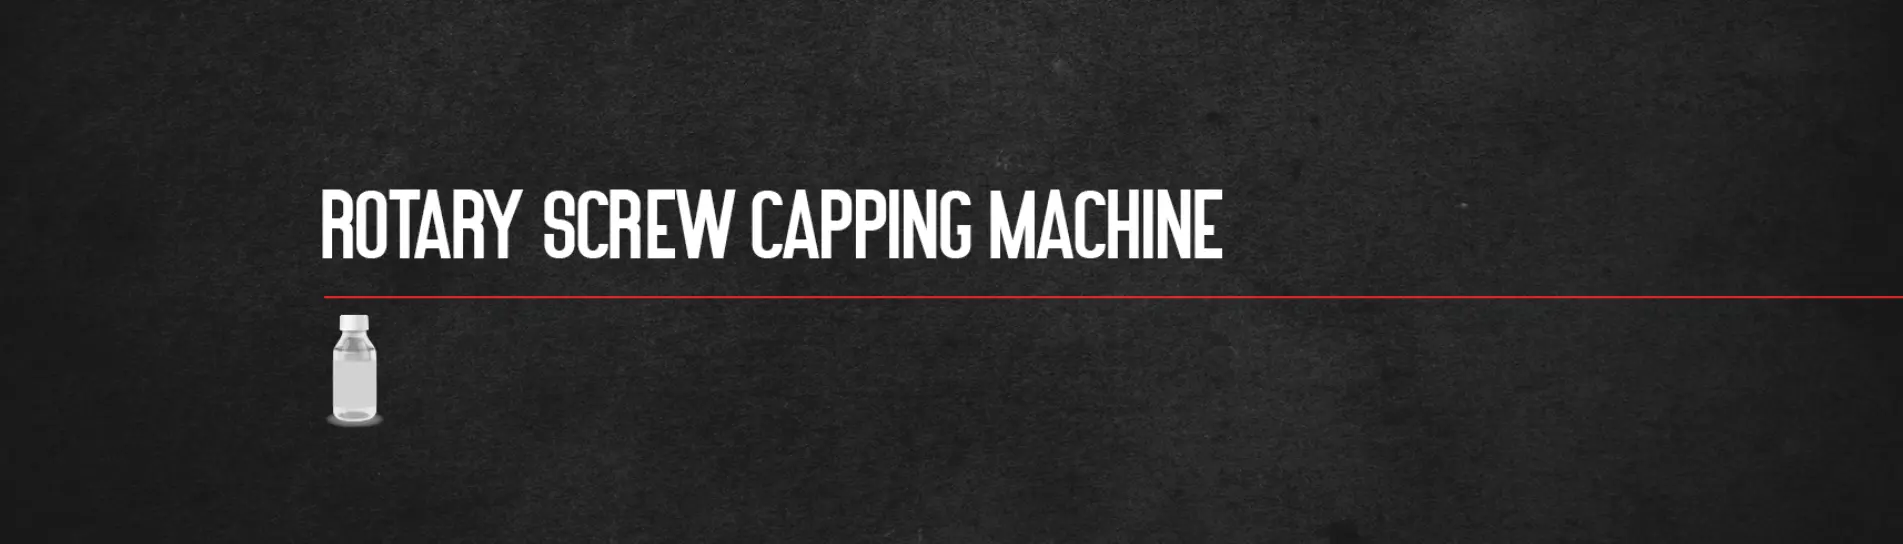 rotary-screw-capping-machine